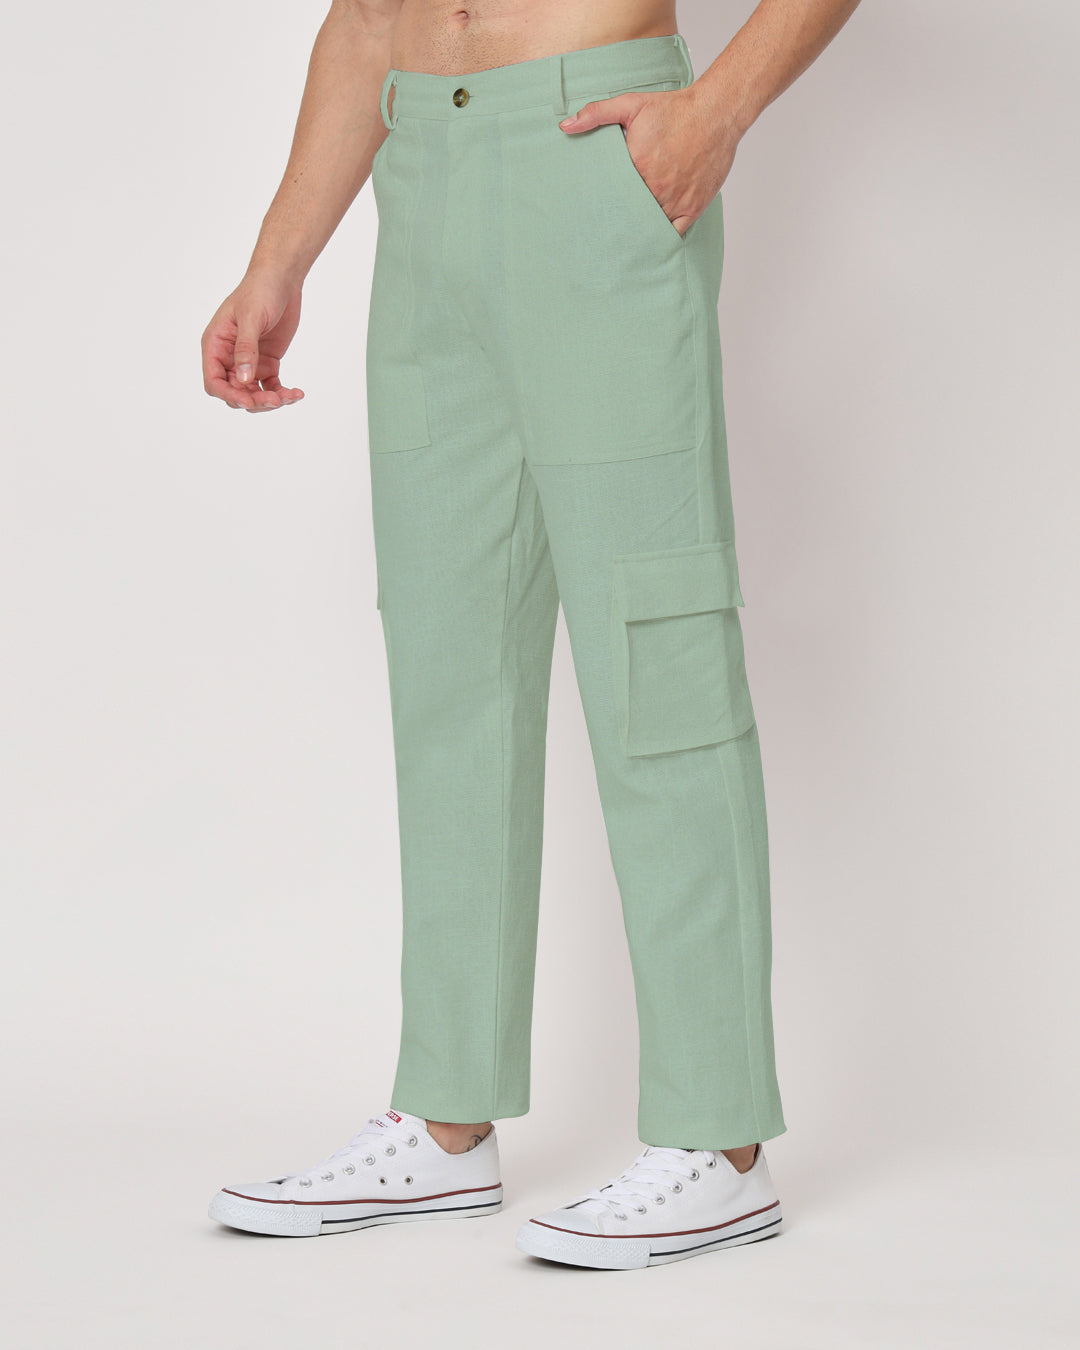 Combo: Function Flex Beige & Spring Green Men's Pants- Set Of 2